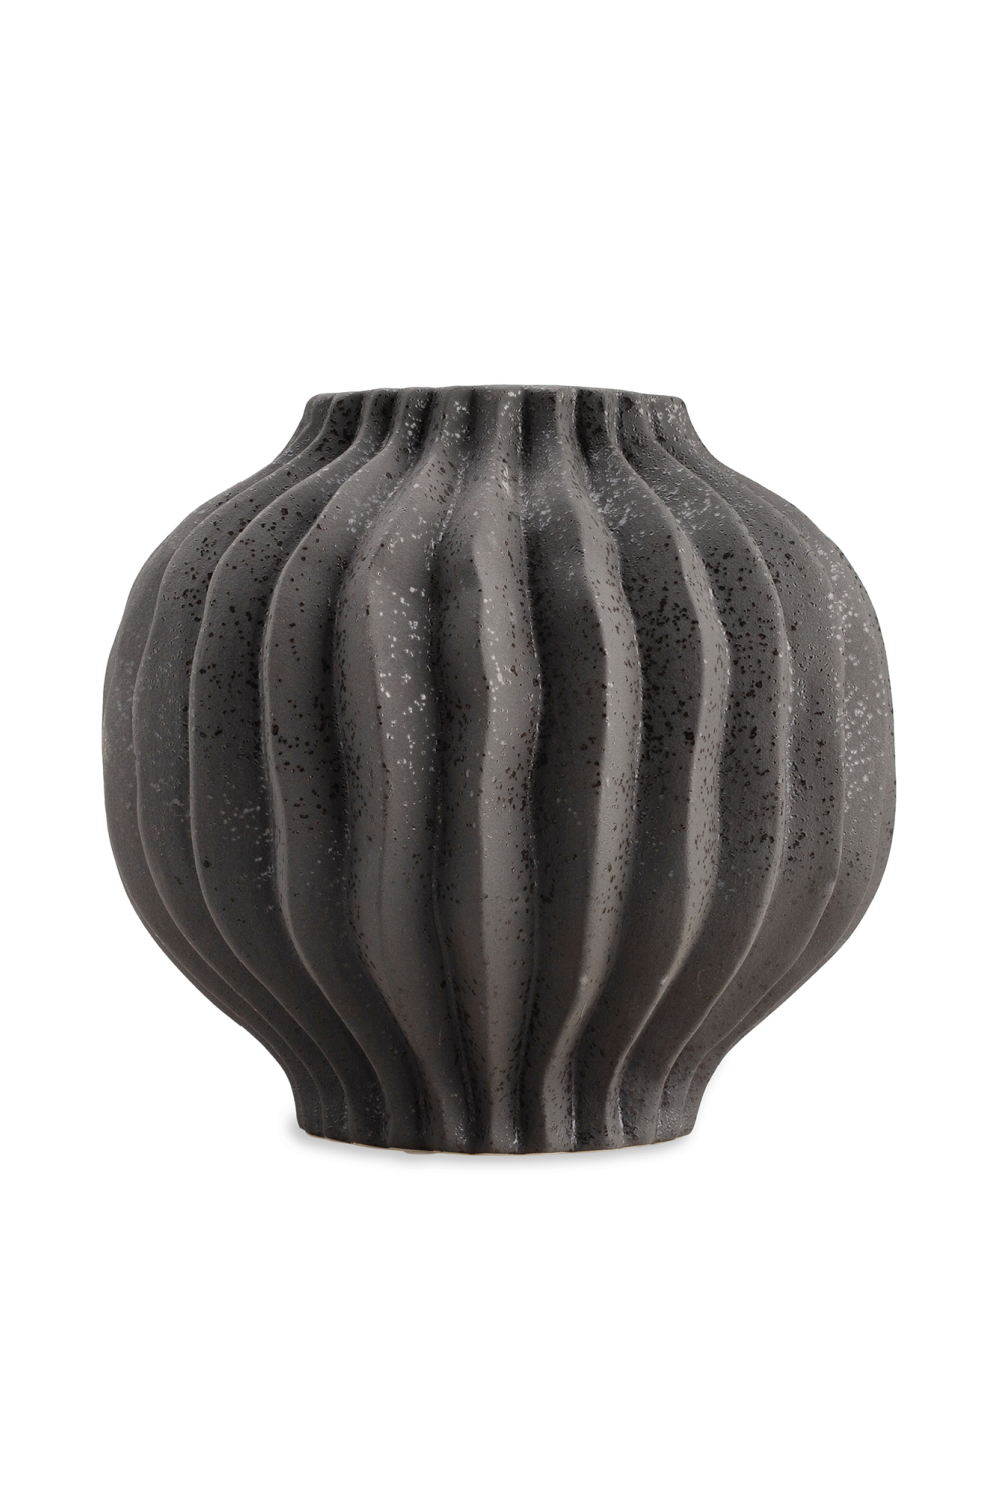 Spatter Glaze Ceramic Vase | Liang & Eimil Fleuret II | OROA